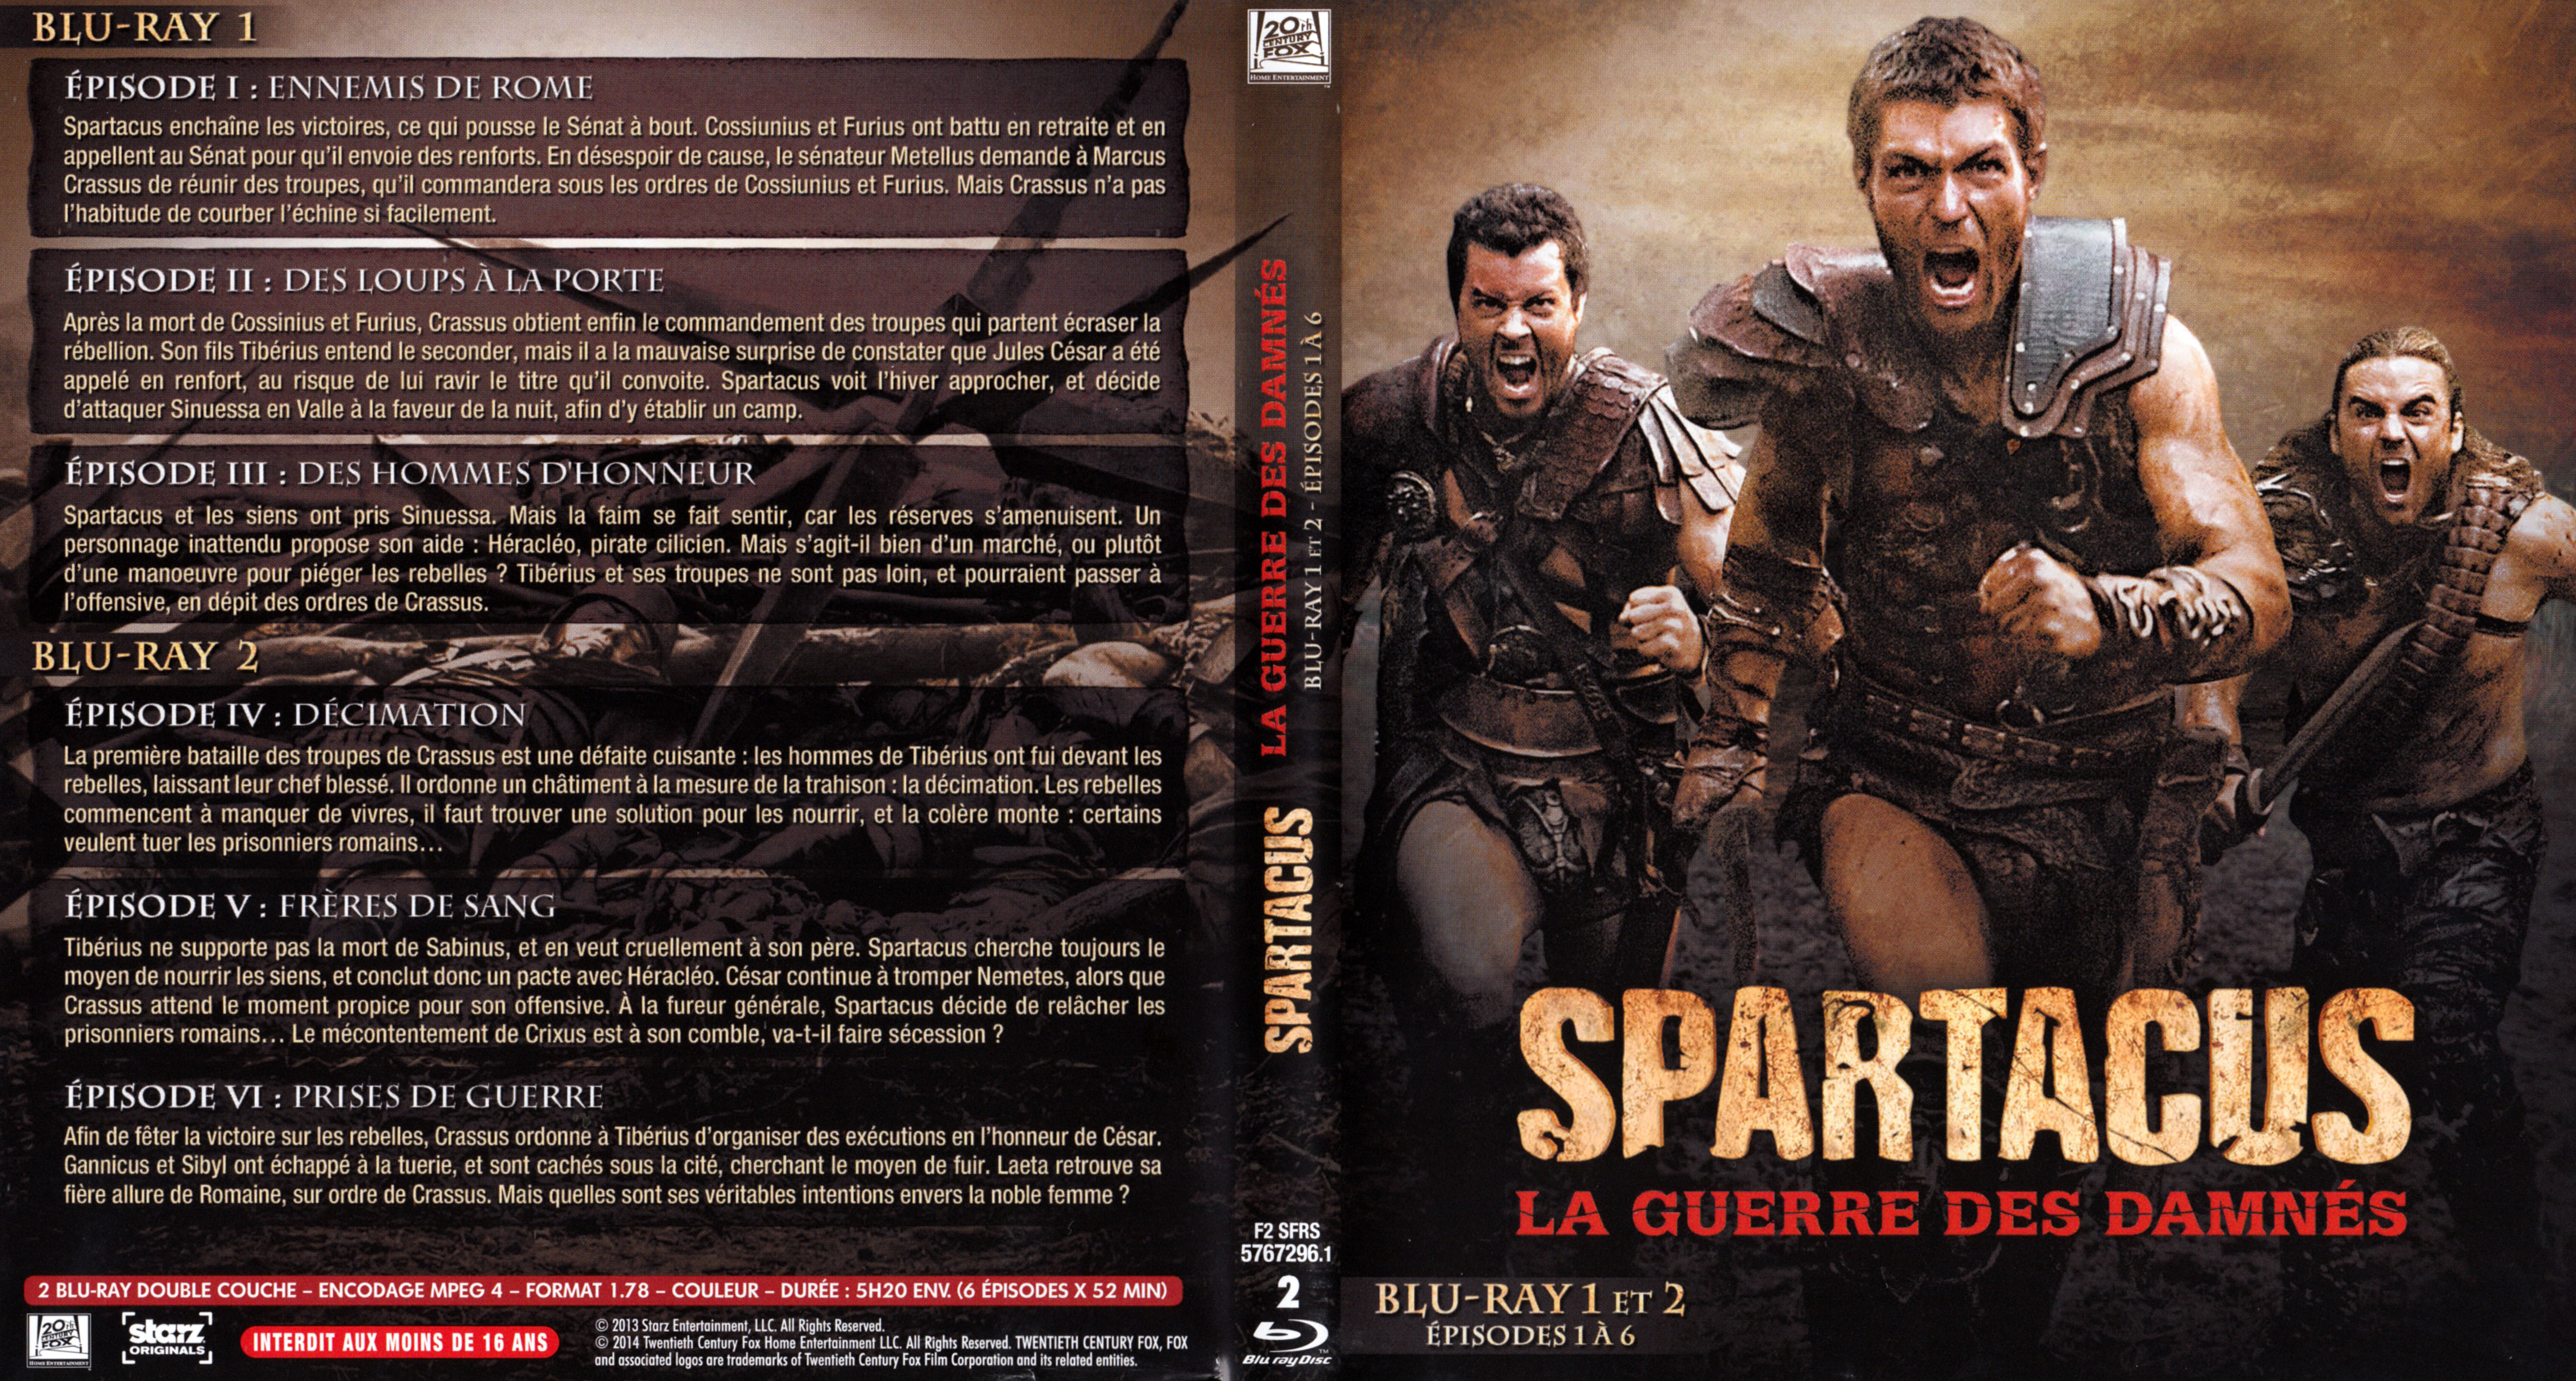 Jaquette DVD Spartacus La guerre des damns Saison 3 DVD 1 (BLU-RAY)